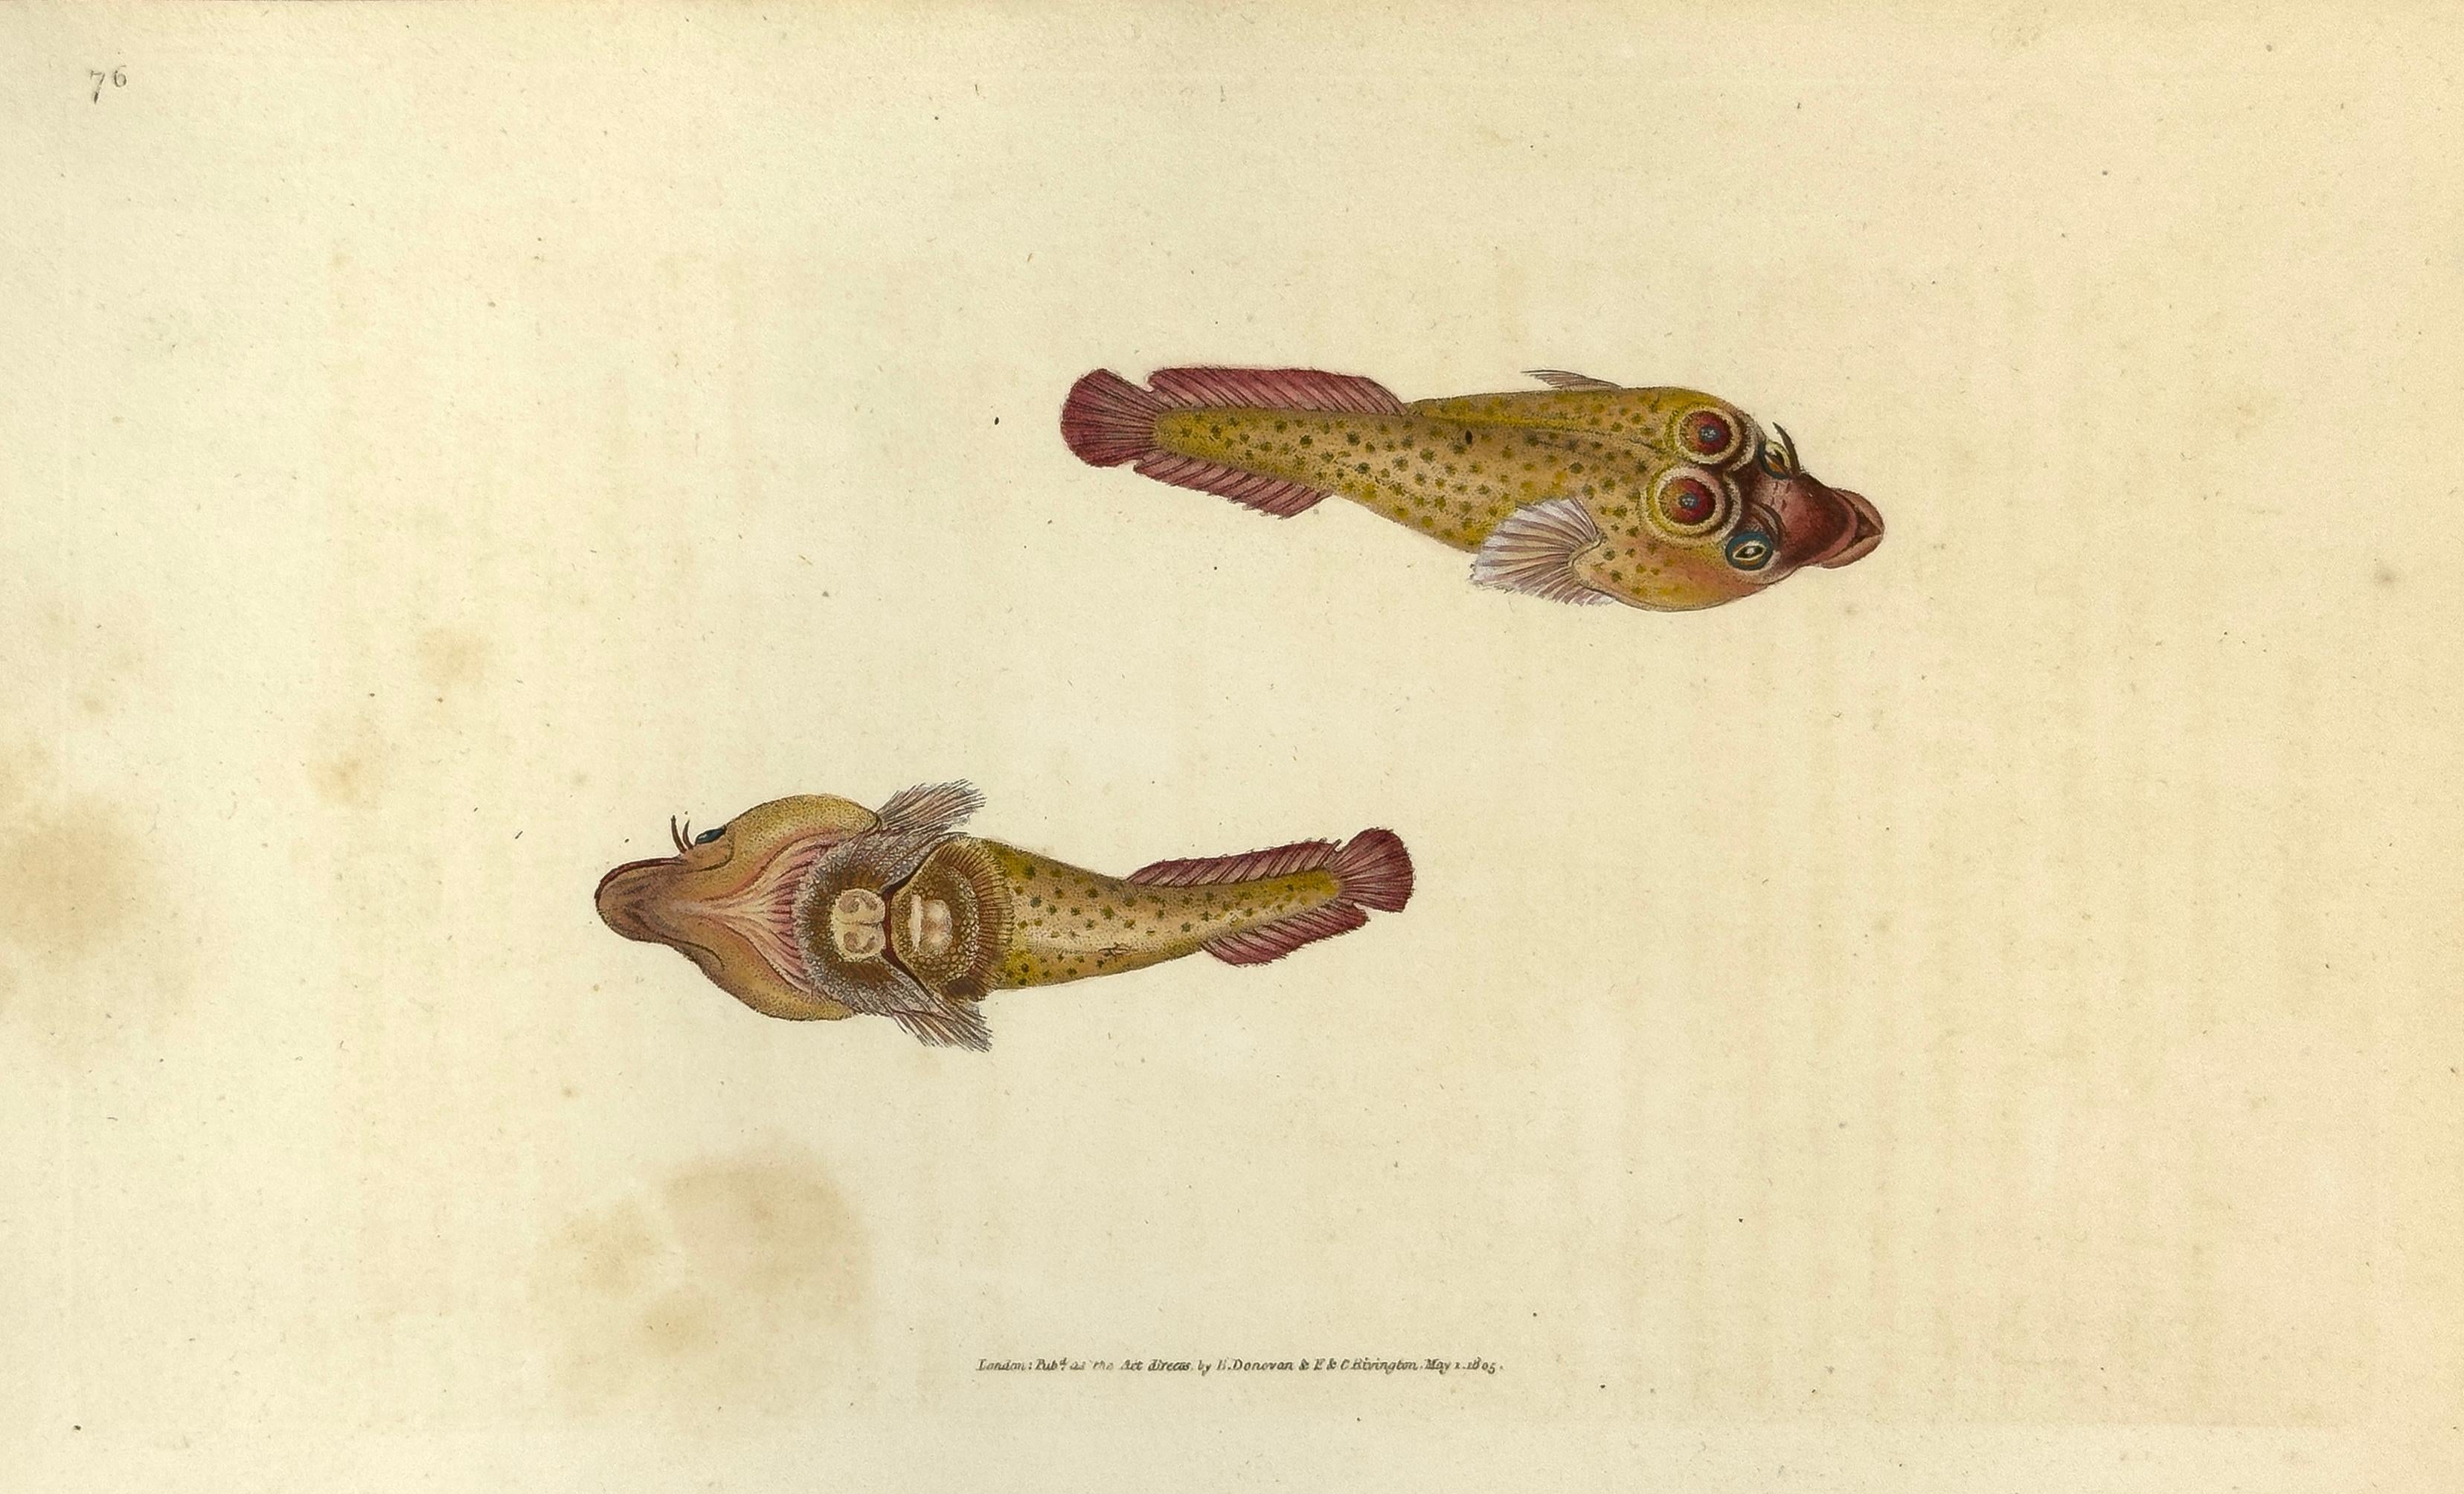 76: Cyclopterus ocellatus, Ocellated Sucker